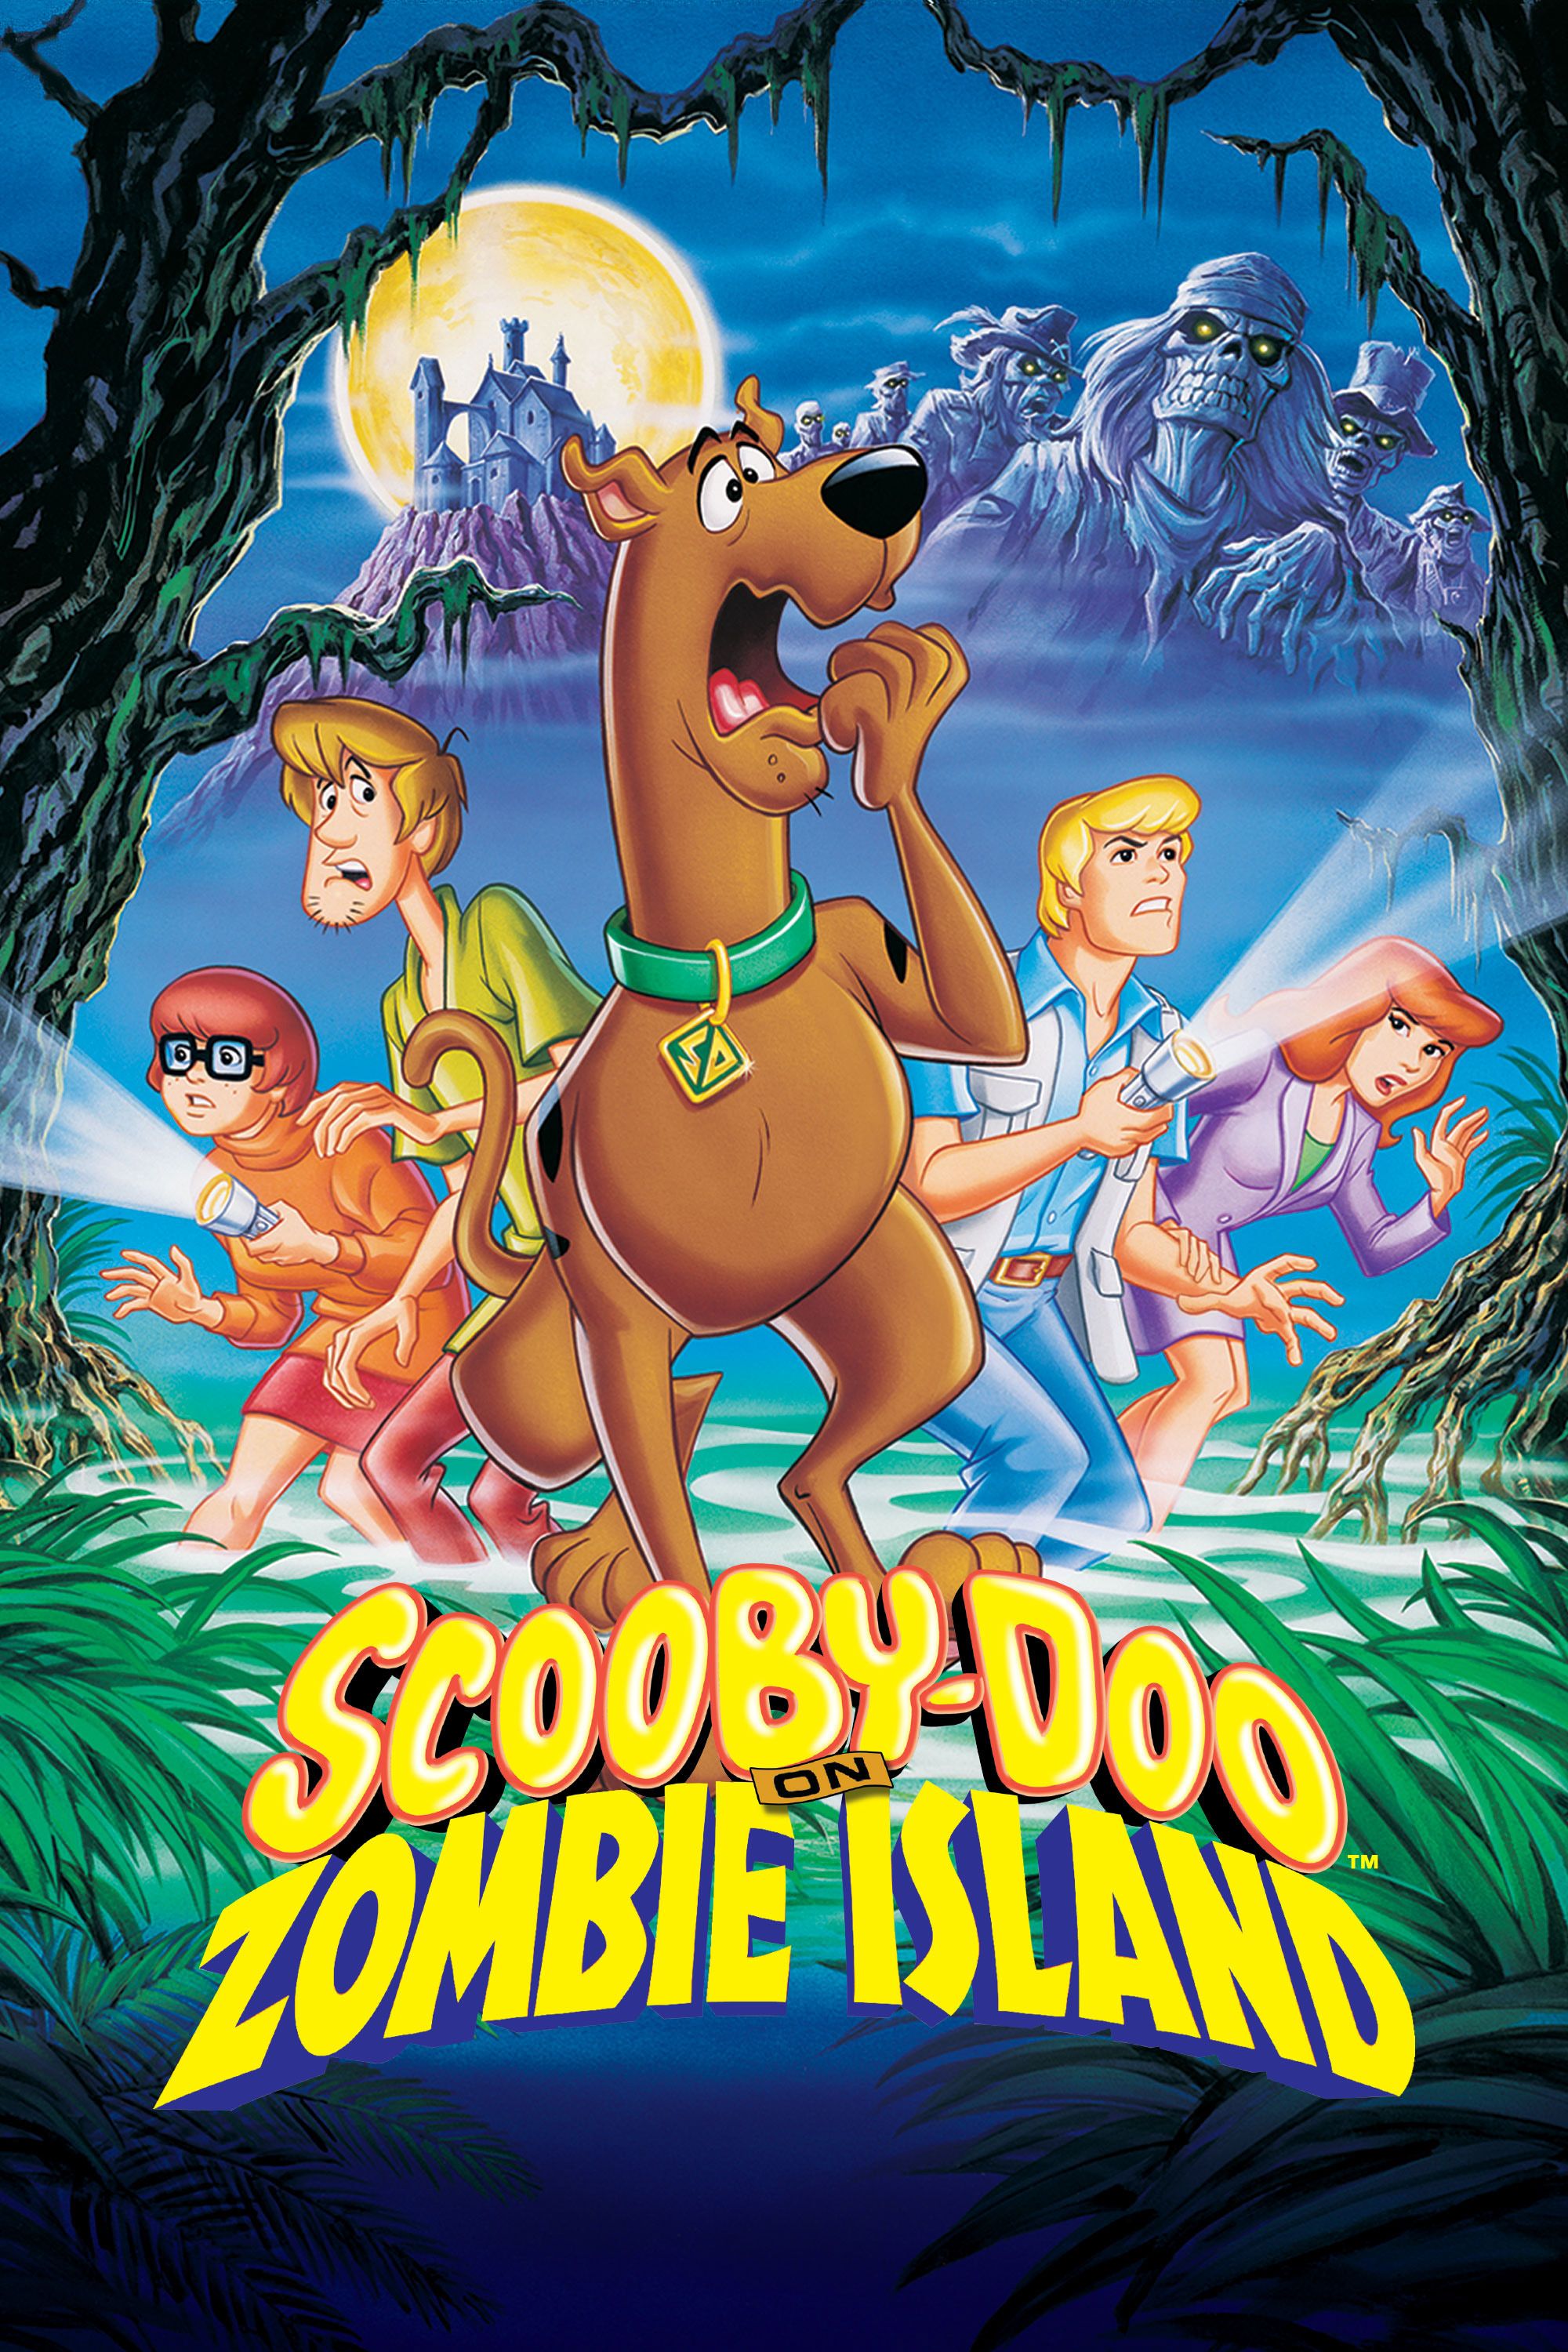 daren villanueva recommends Scooby Doo Movie Downloads